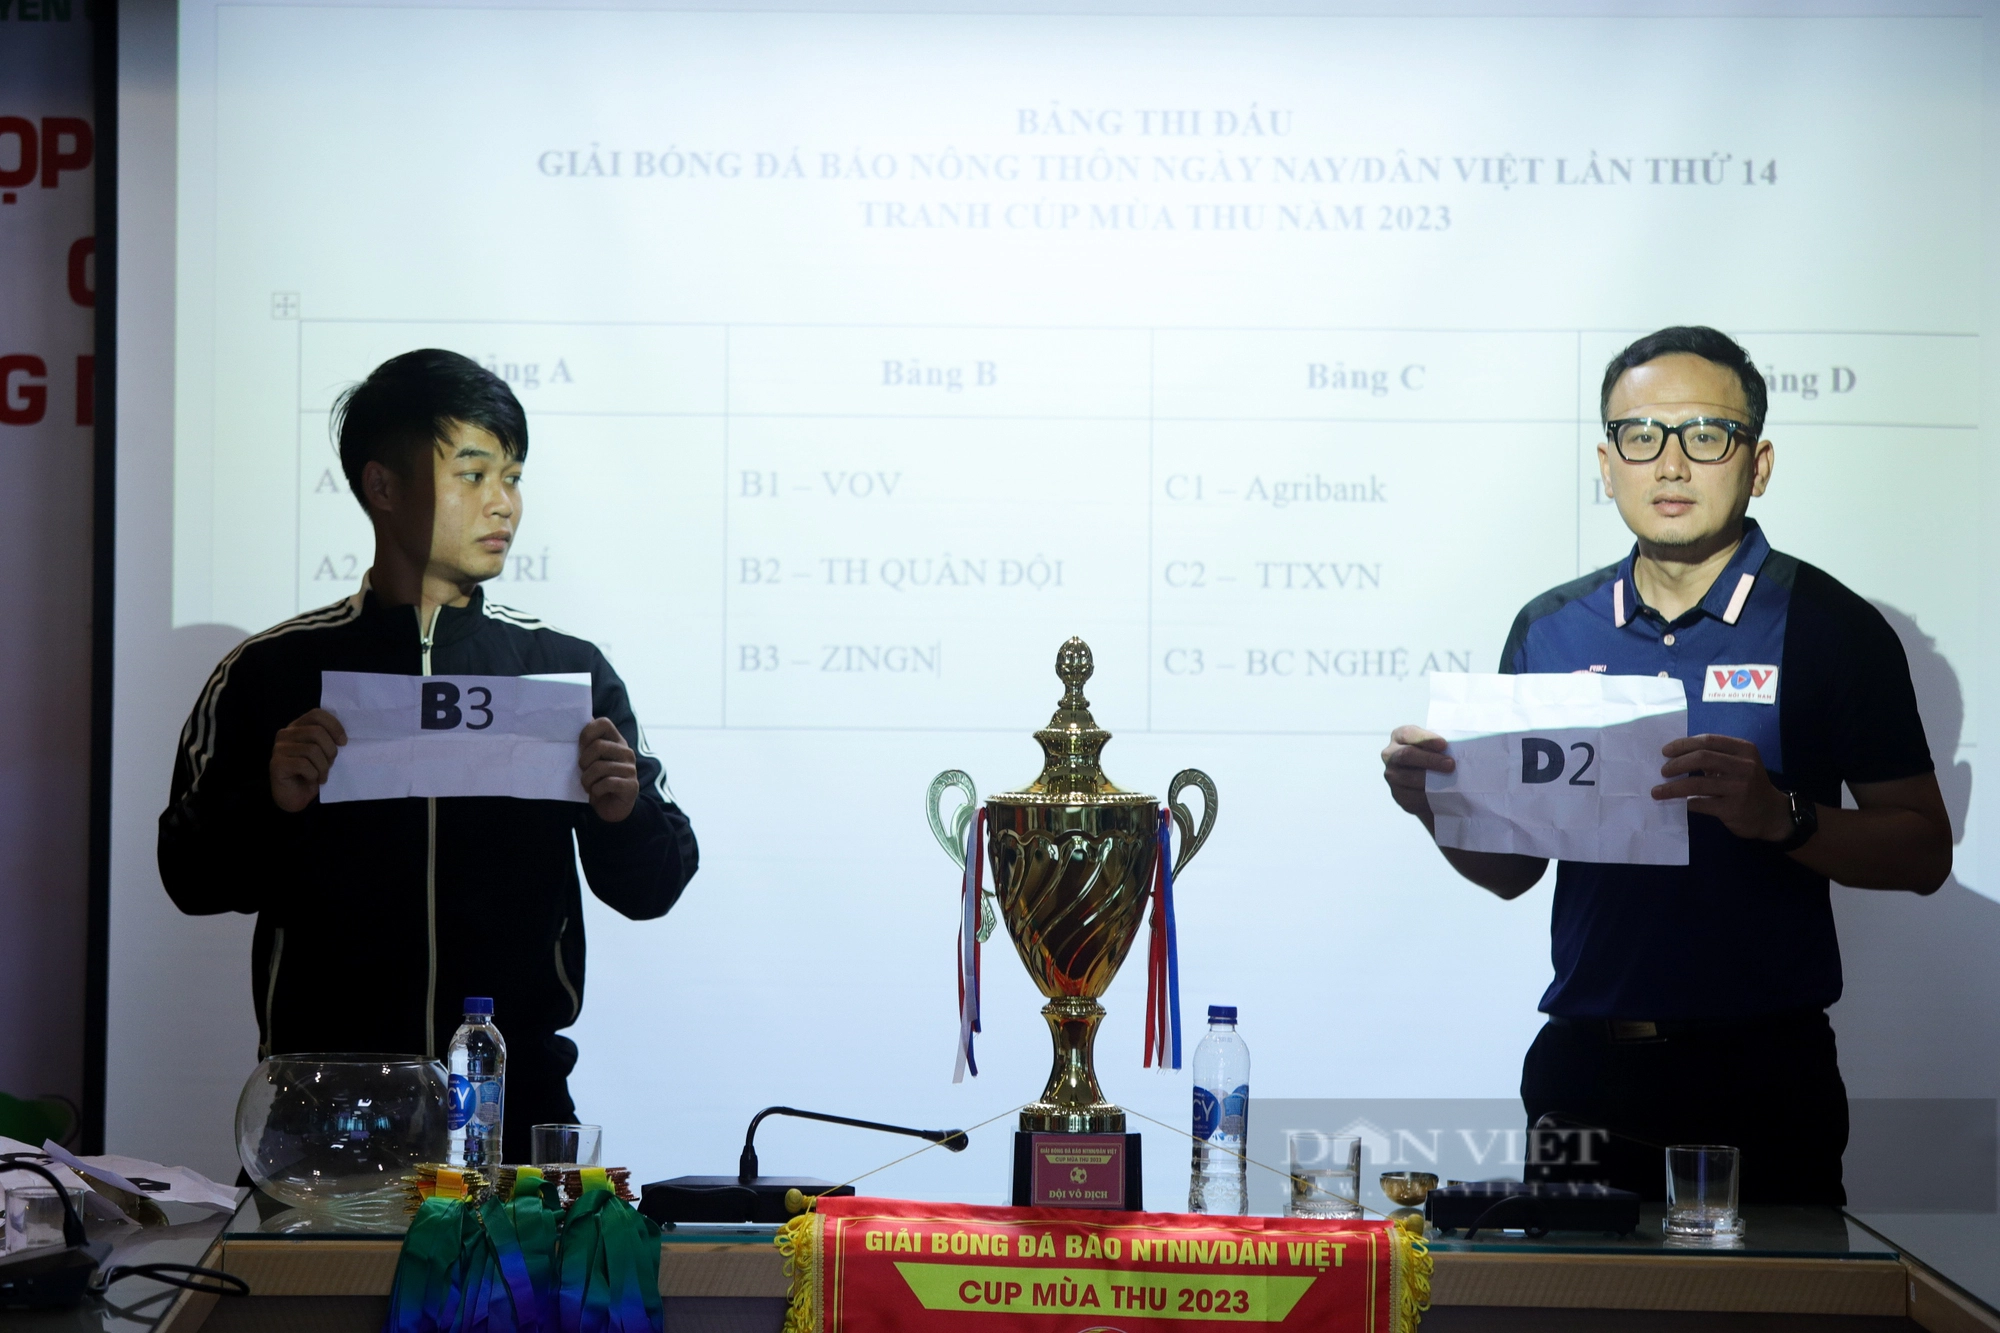 Họp báo và bốc thăm chia bảng Giải bóng đá Báo Nông thôn Ngày nay/Dân Việt - Ảnh 6.